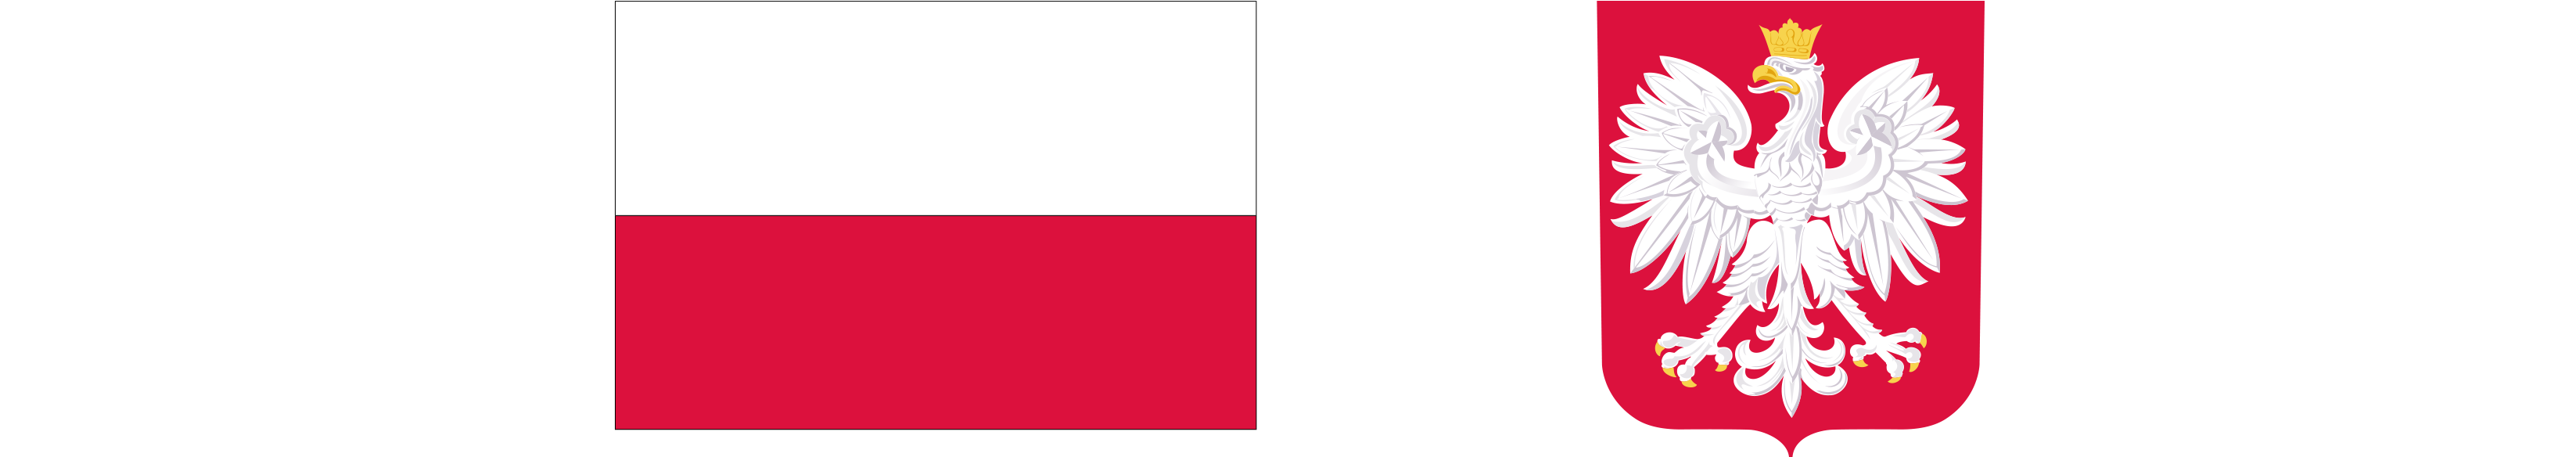 Flaga Polski oraz godło